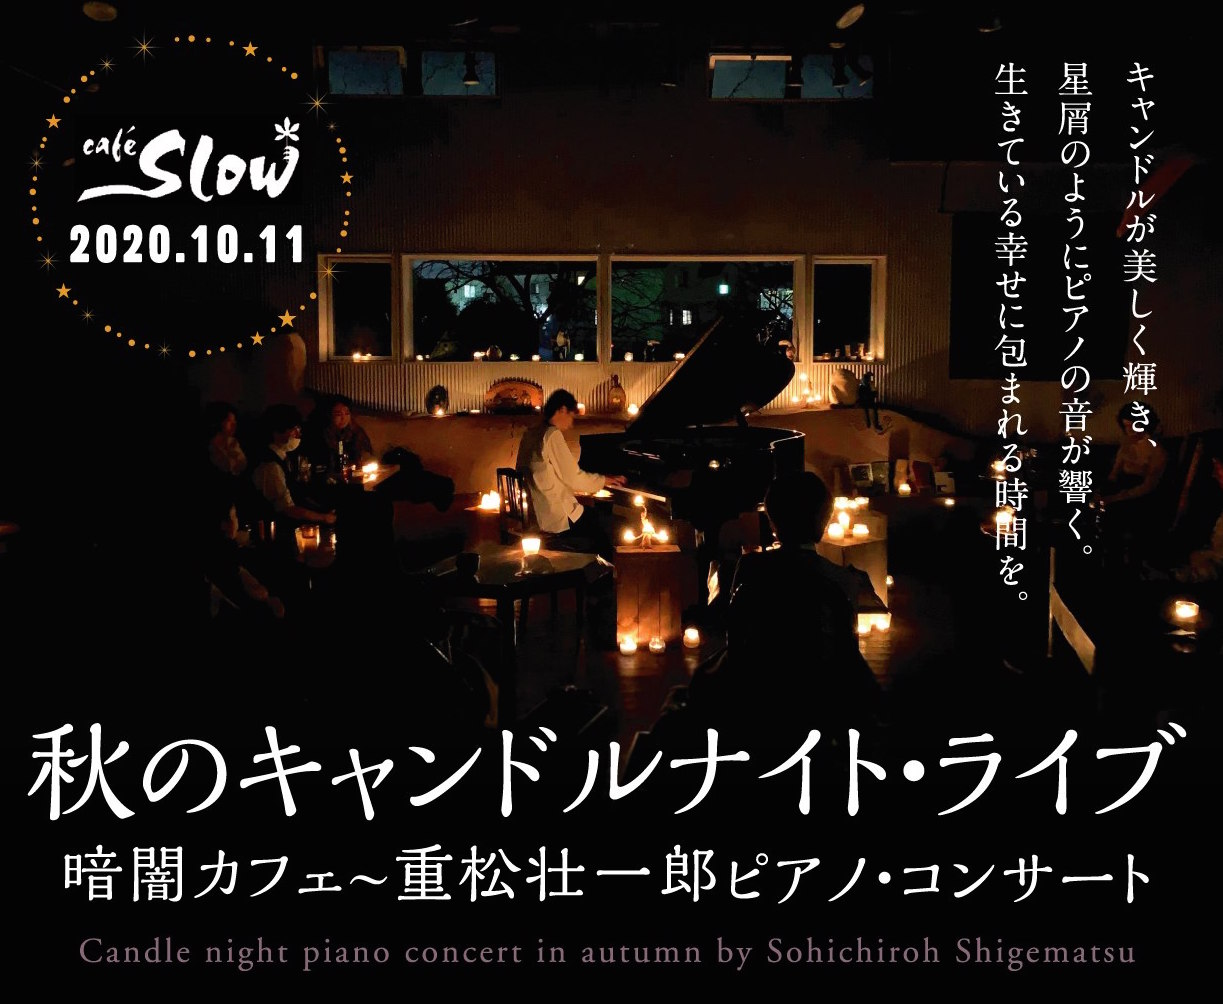 10/11(日) 暗闇カフェ 秋のキャンドルナイト・ライブ  〜 重松壮一郎ピアノ・コンサート